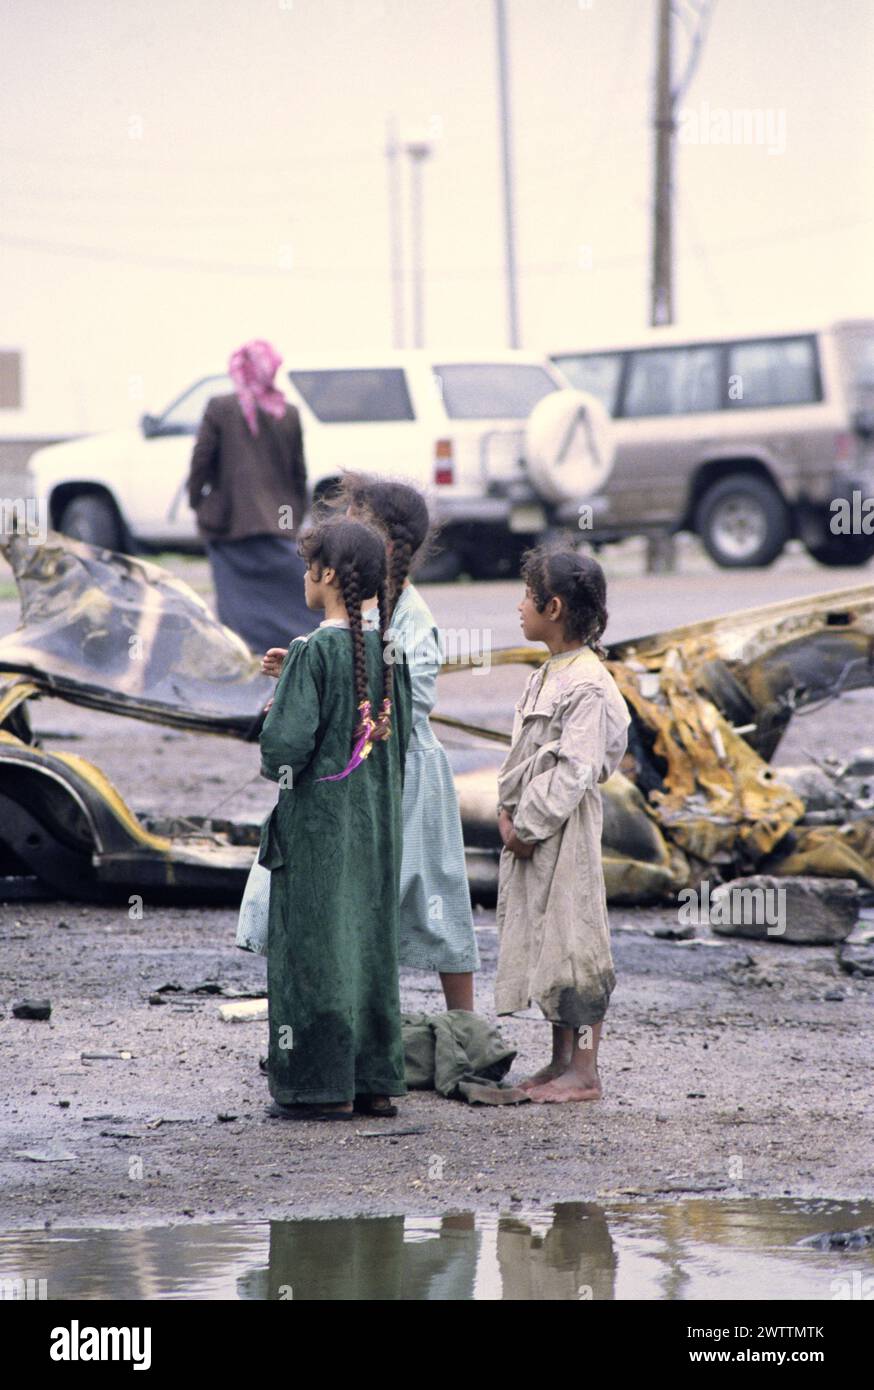 23 mars 1991 des enfants chiites irakiens se tiennent parmi les flaques d'eau dans un camp de réfugiés près de Safwan dans le sud de l'Irak, près de la frontière avec le Koweït. Banque D'Images